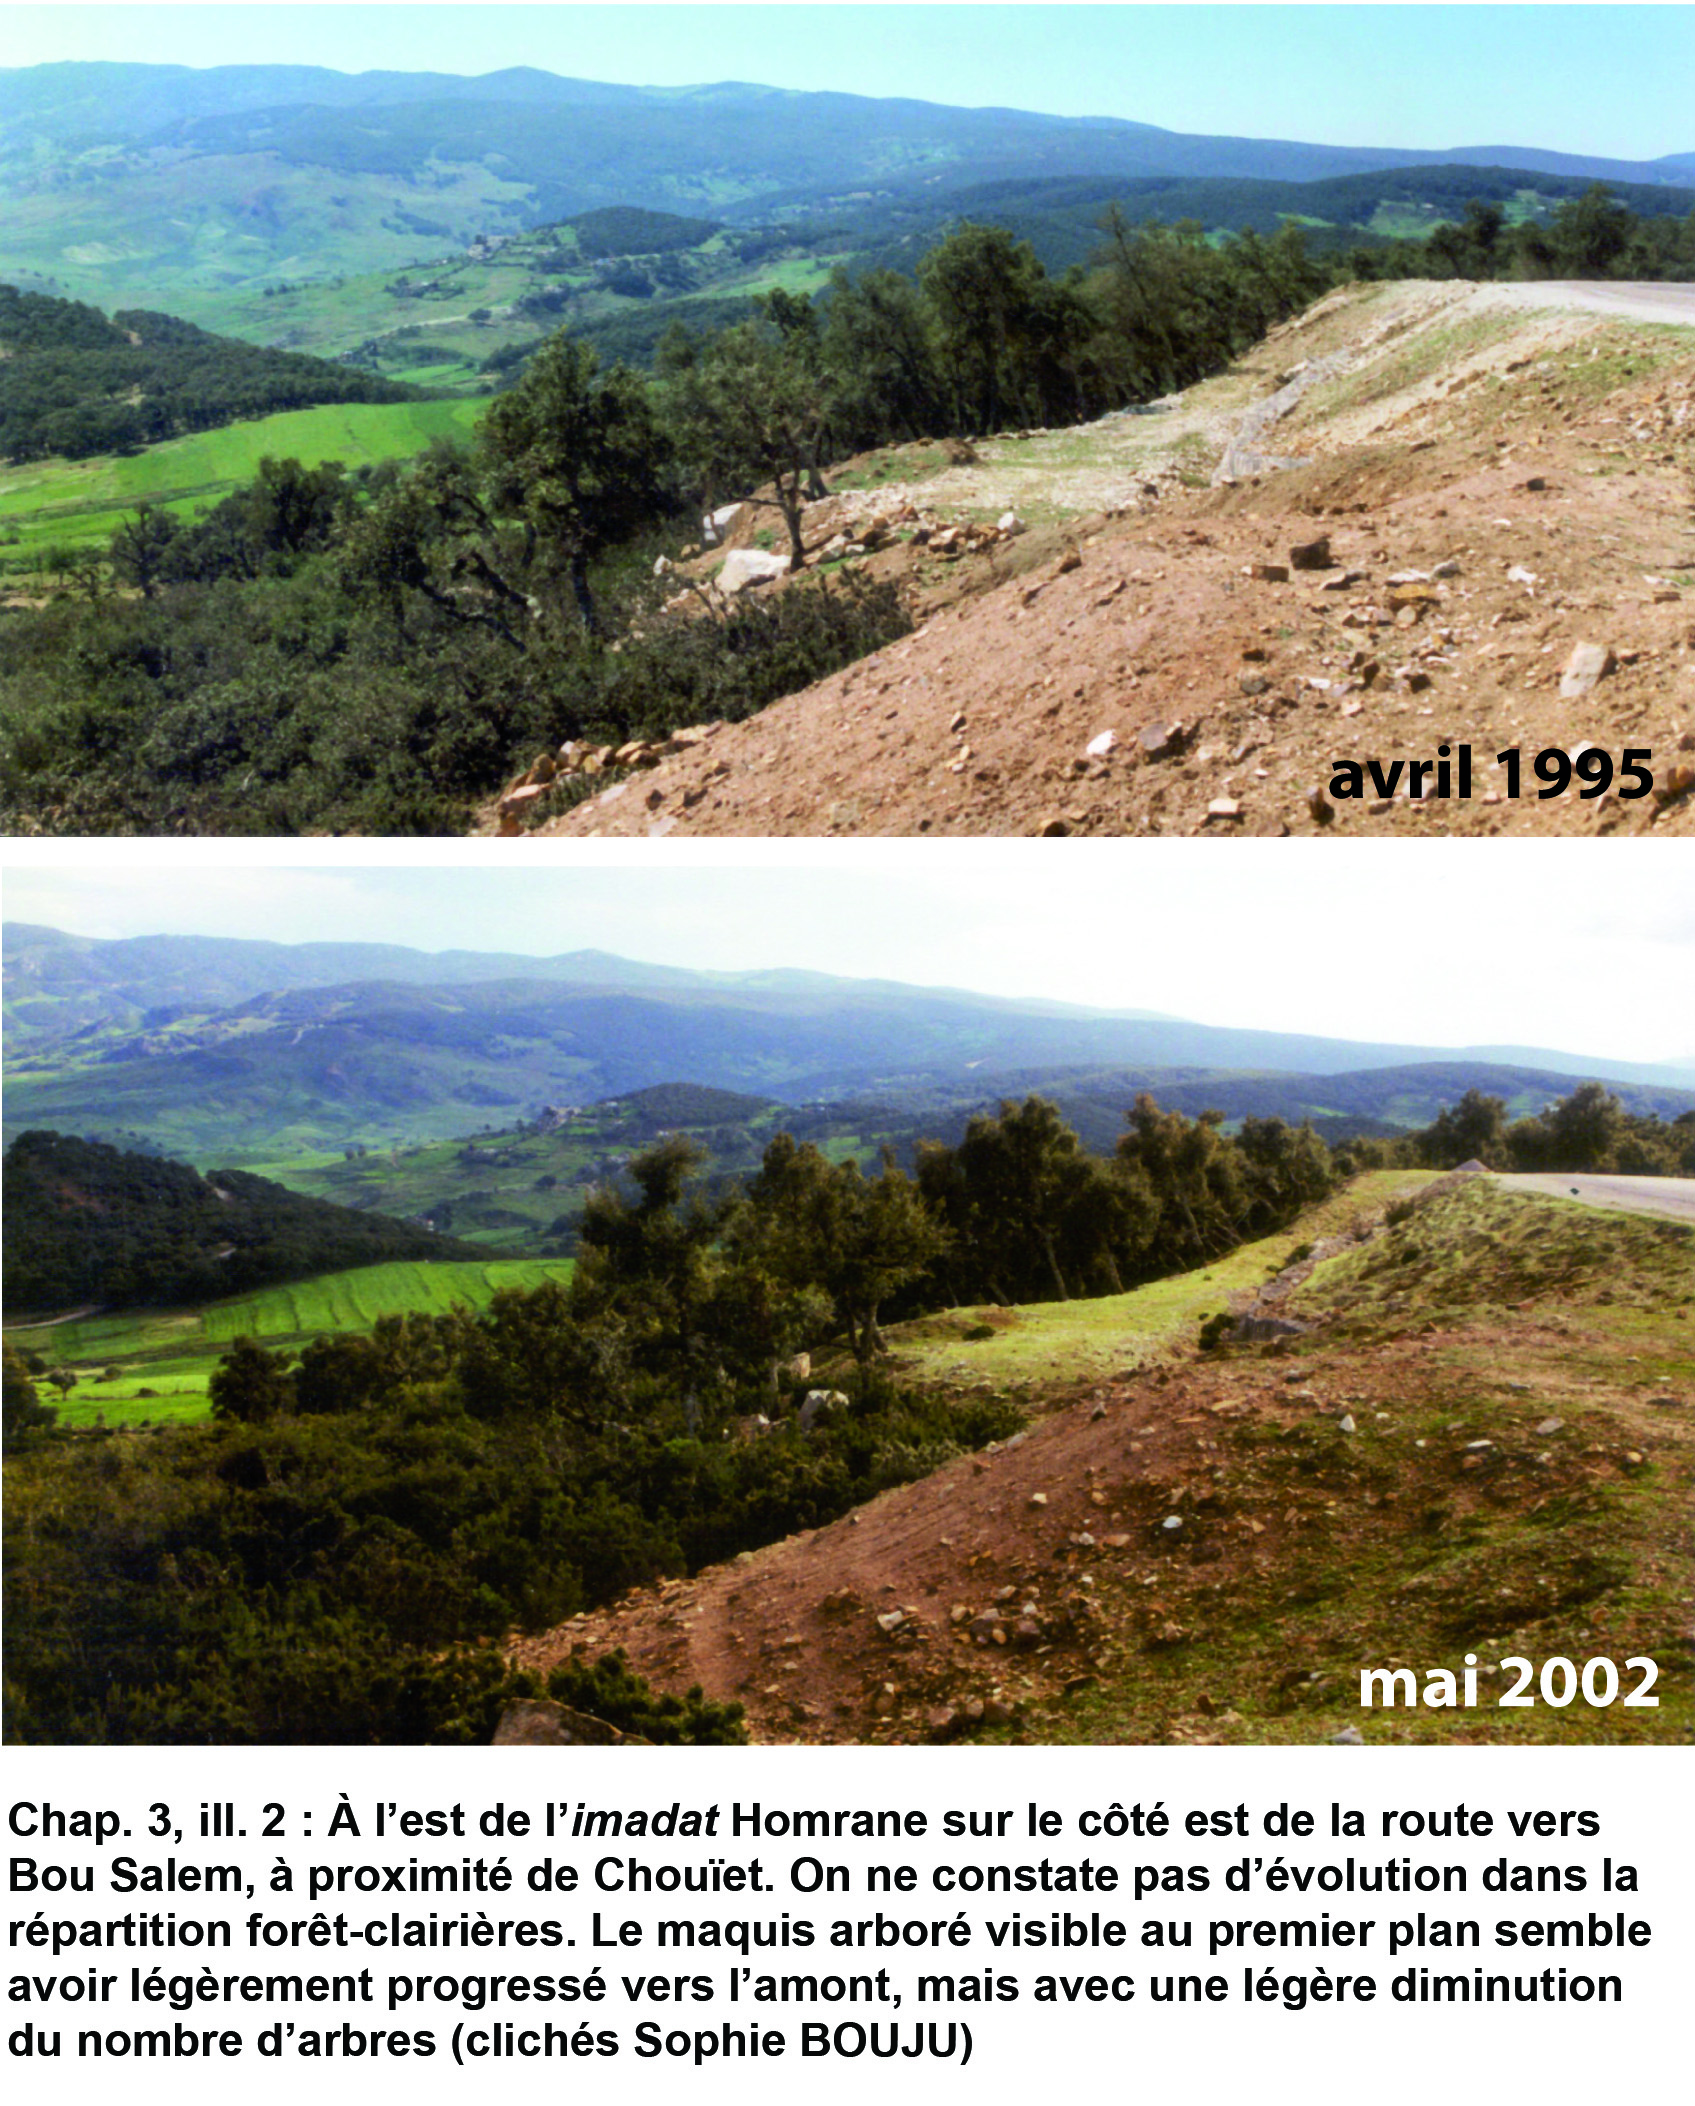 Illustration 2 : Évolution des paysages de 1995 à 2002 (imadat Homrane)